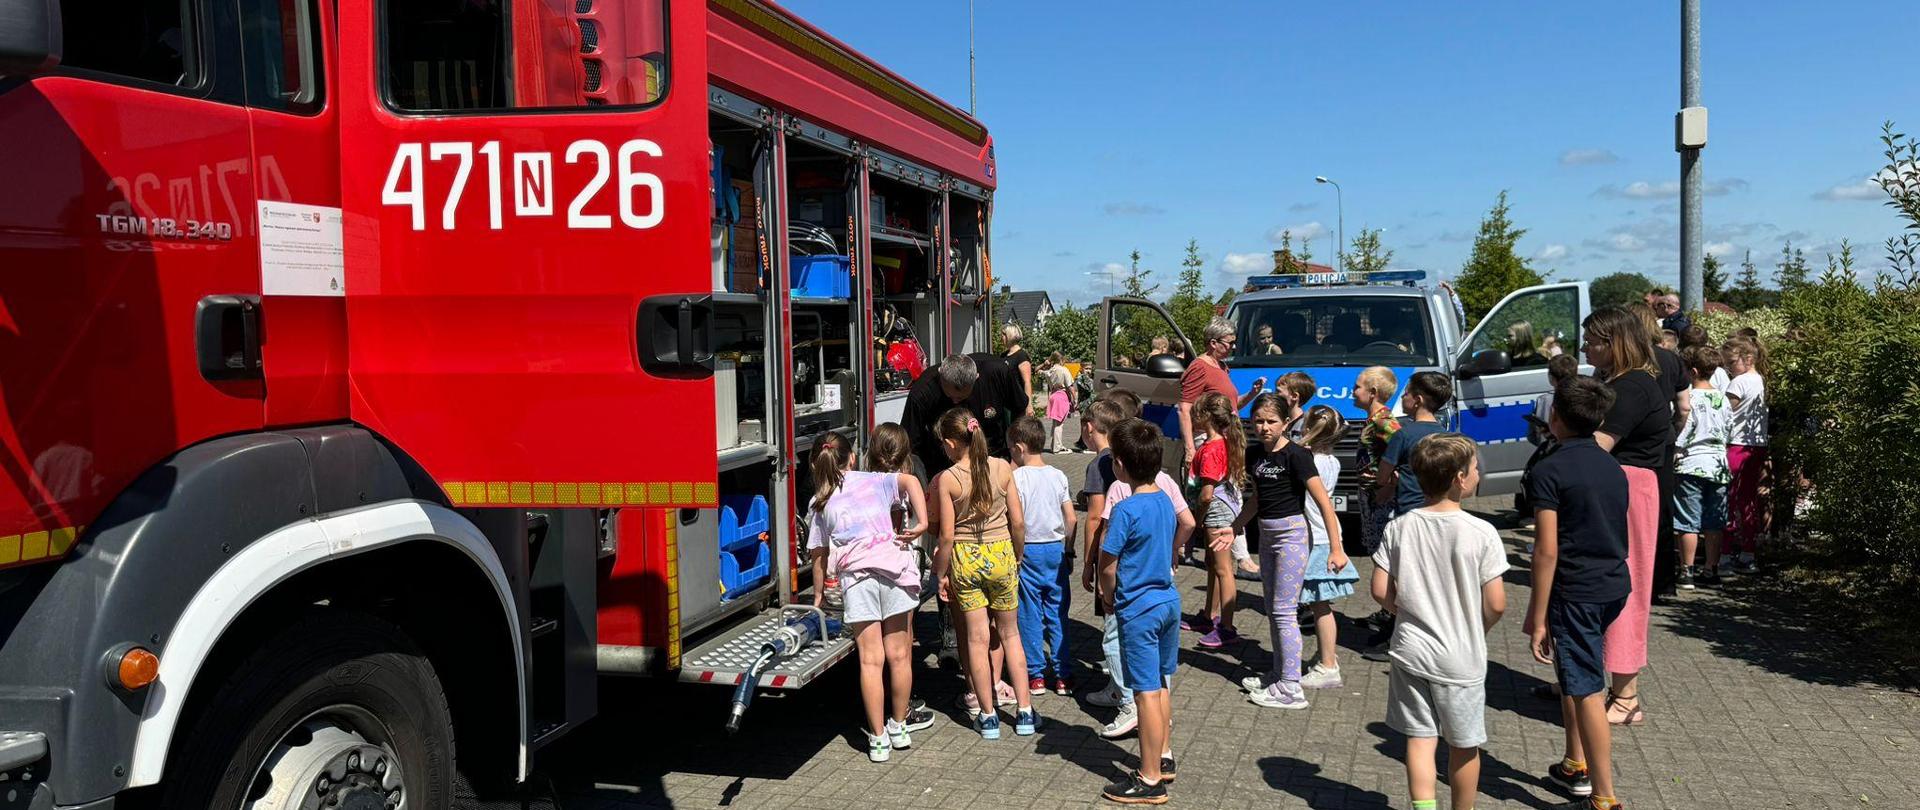 Na zdjęciu widać czerwony samochód strażacki, gromadkę dzieci i nauczyciela. Widać również pojazd Policji. 